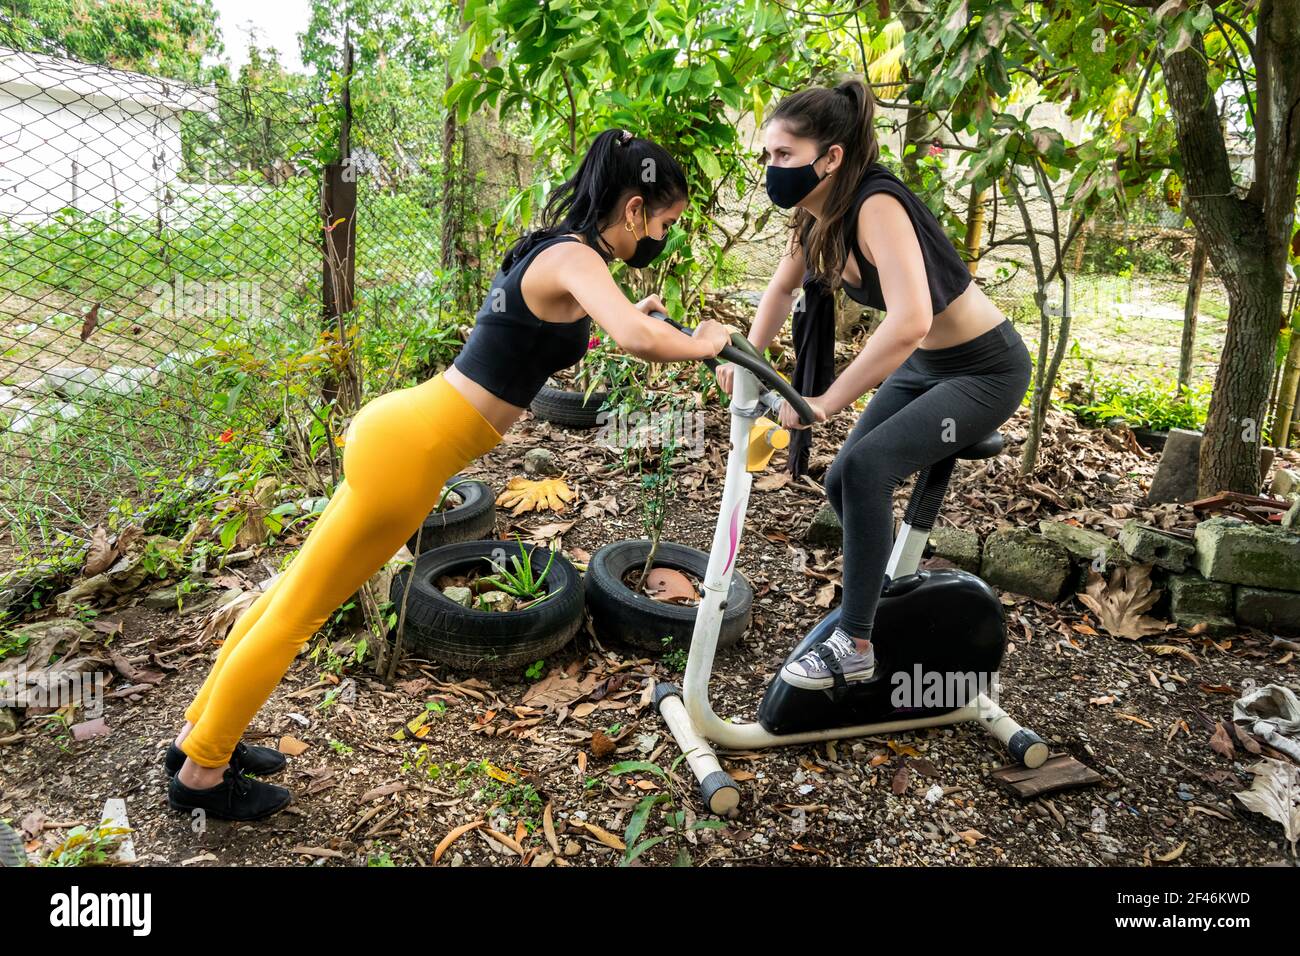 Zwei junge kubanische Frauen arbeiten zusammen draußen in einem verlassenen Hinterhof, sie sind mit einem statischen Fahrrad Stockfoto